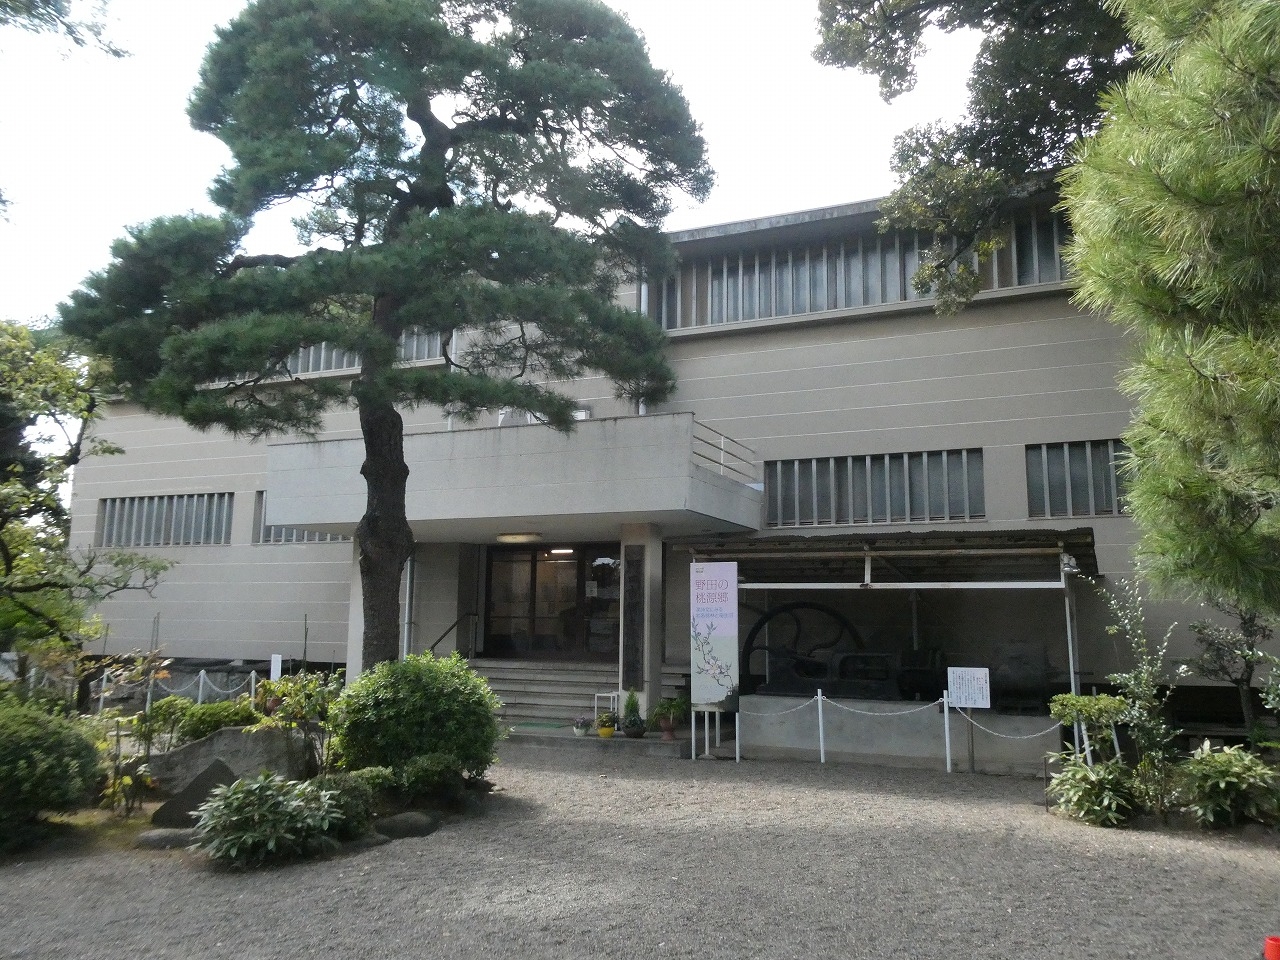 醤油に関する展示が満載、野田市郷土博物館。市民会館はコスプレの名所?